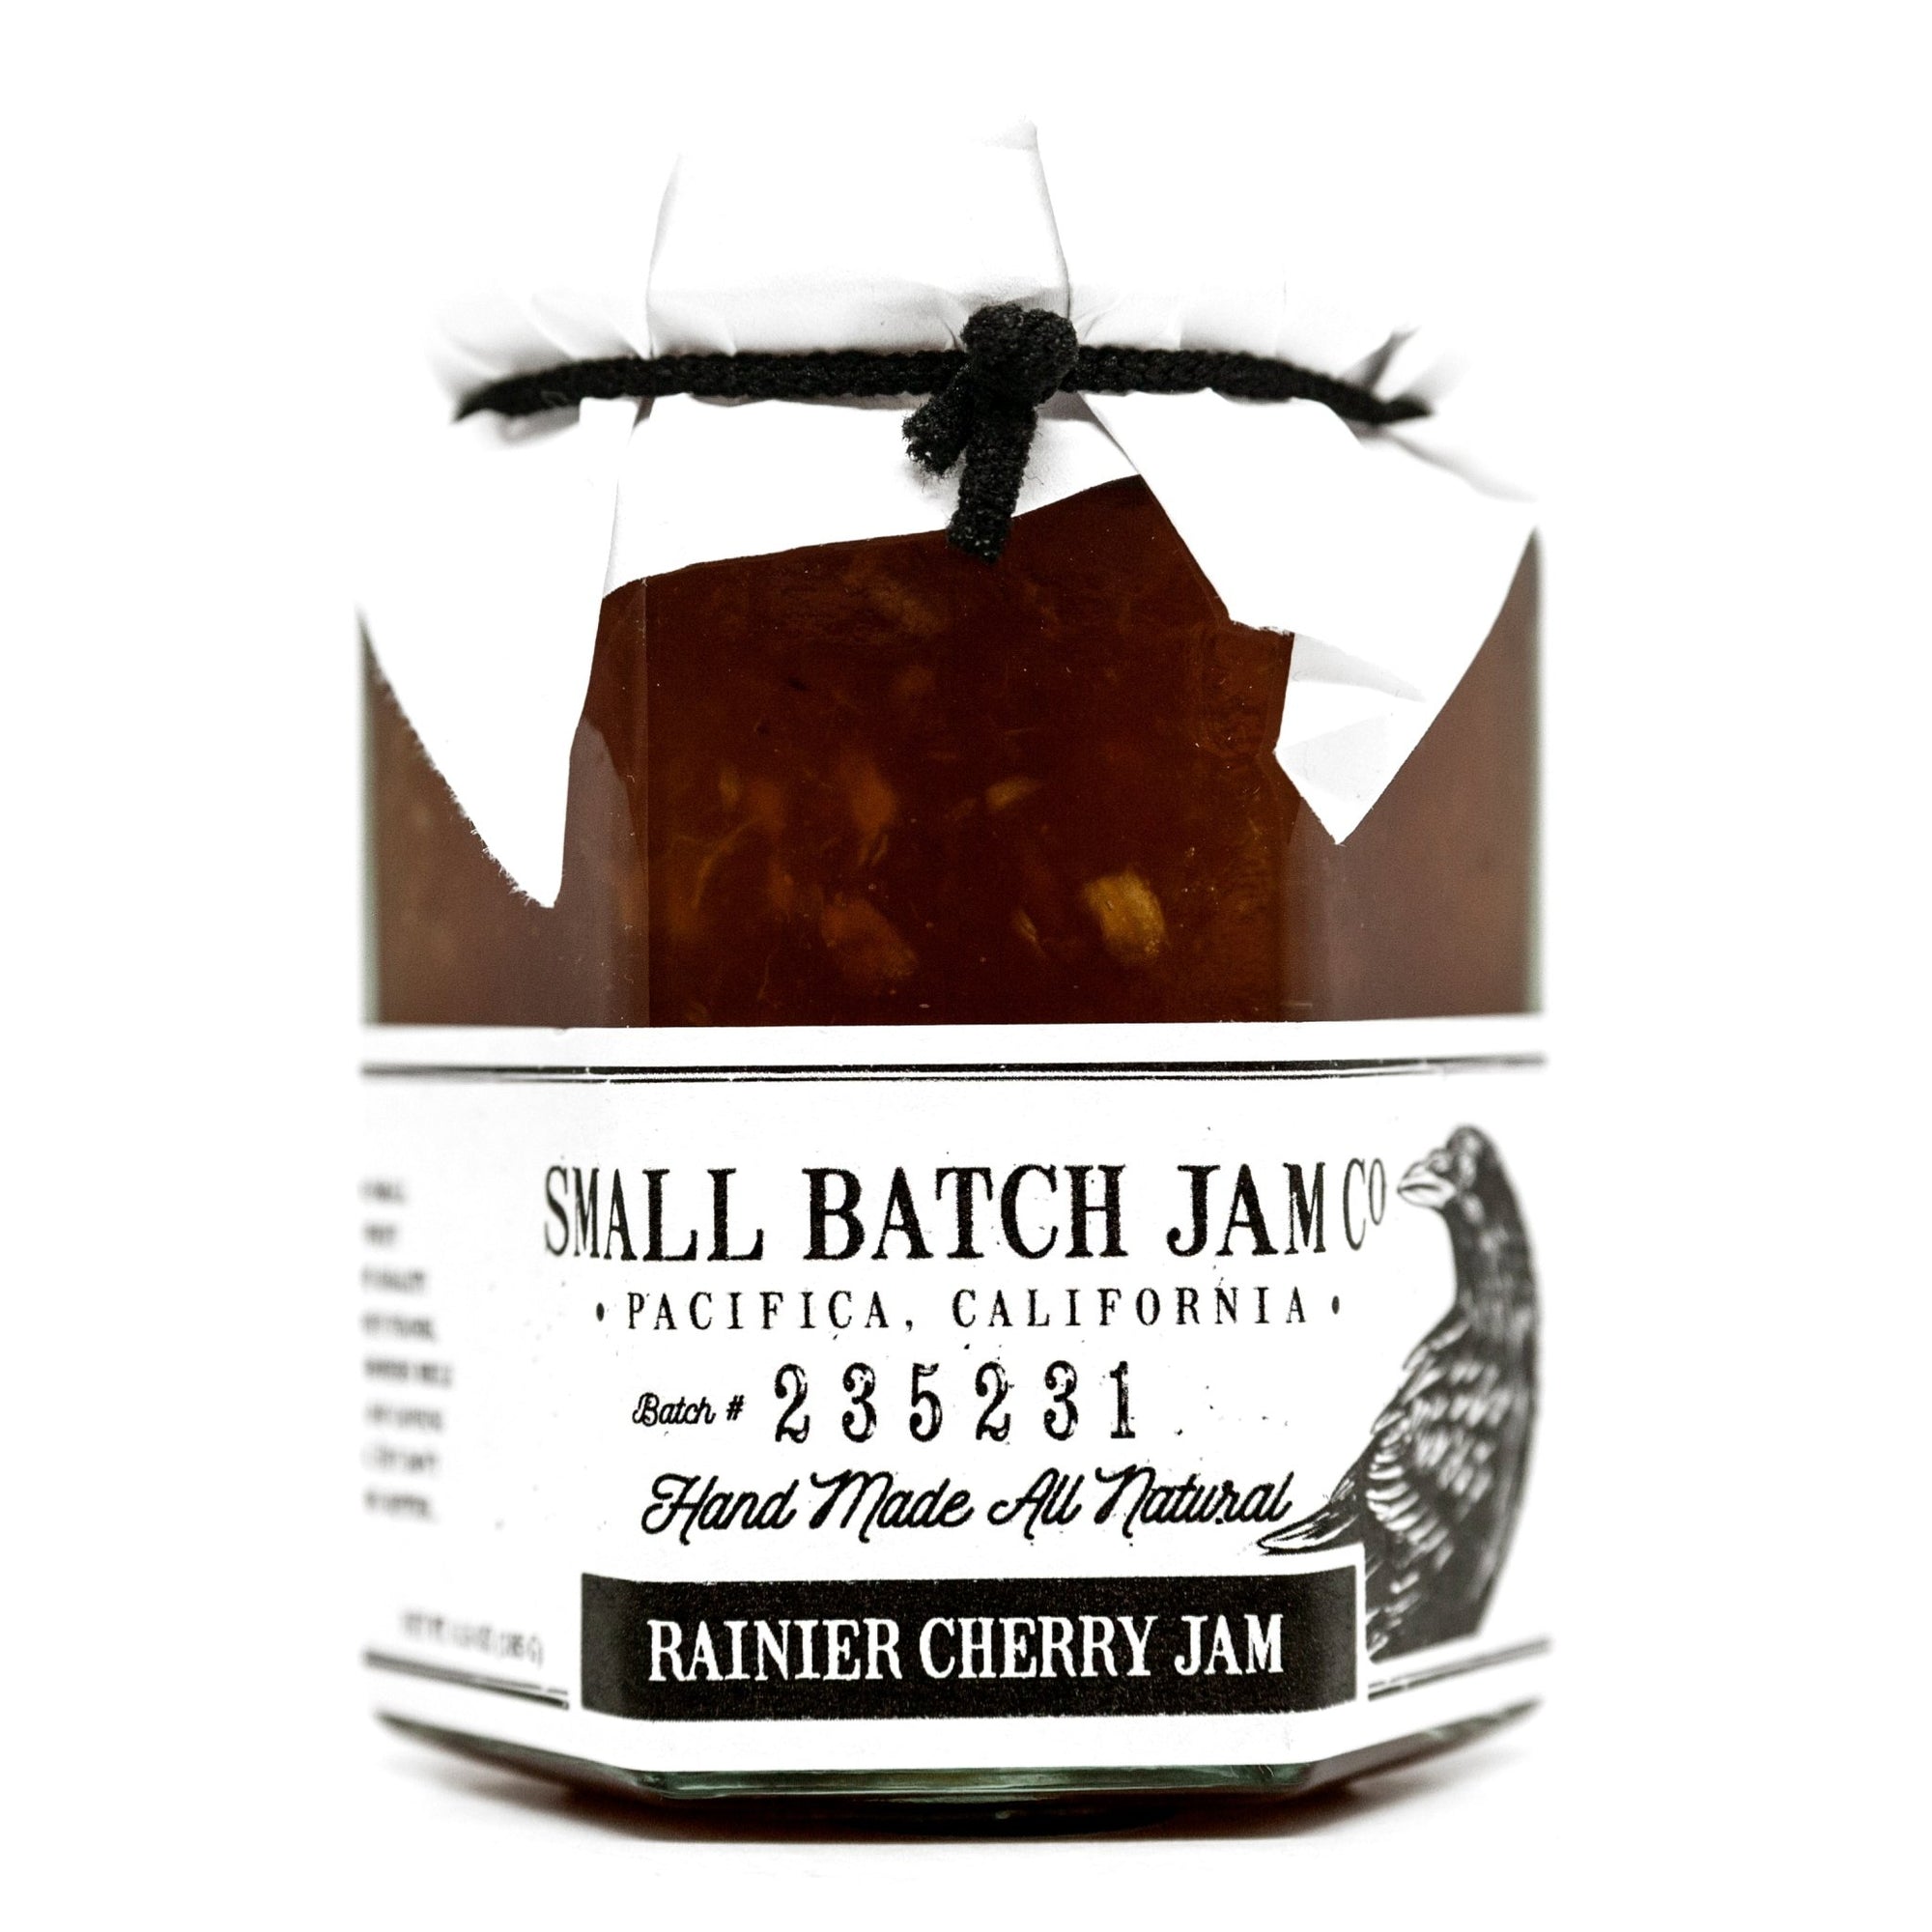 Rainier Cherry Jam - Small Batch Jam Co